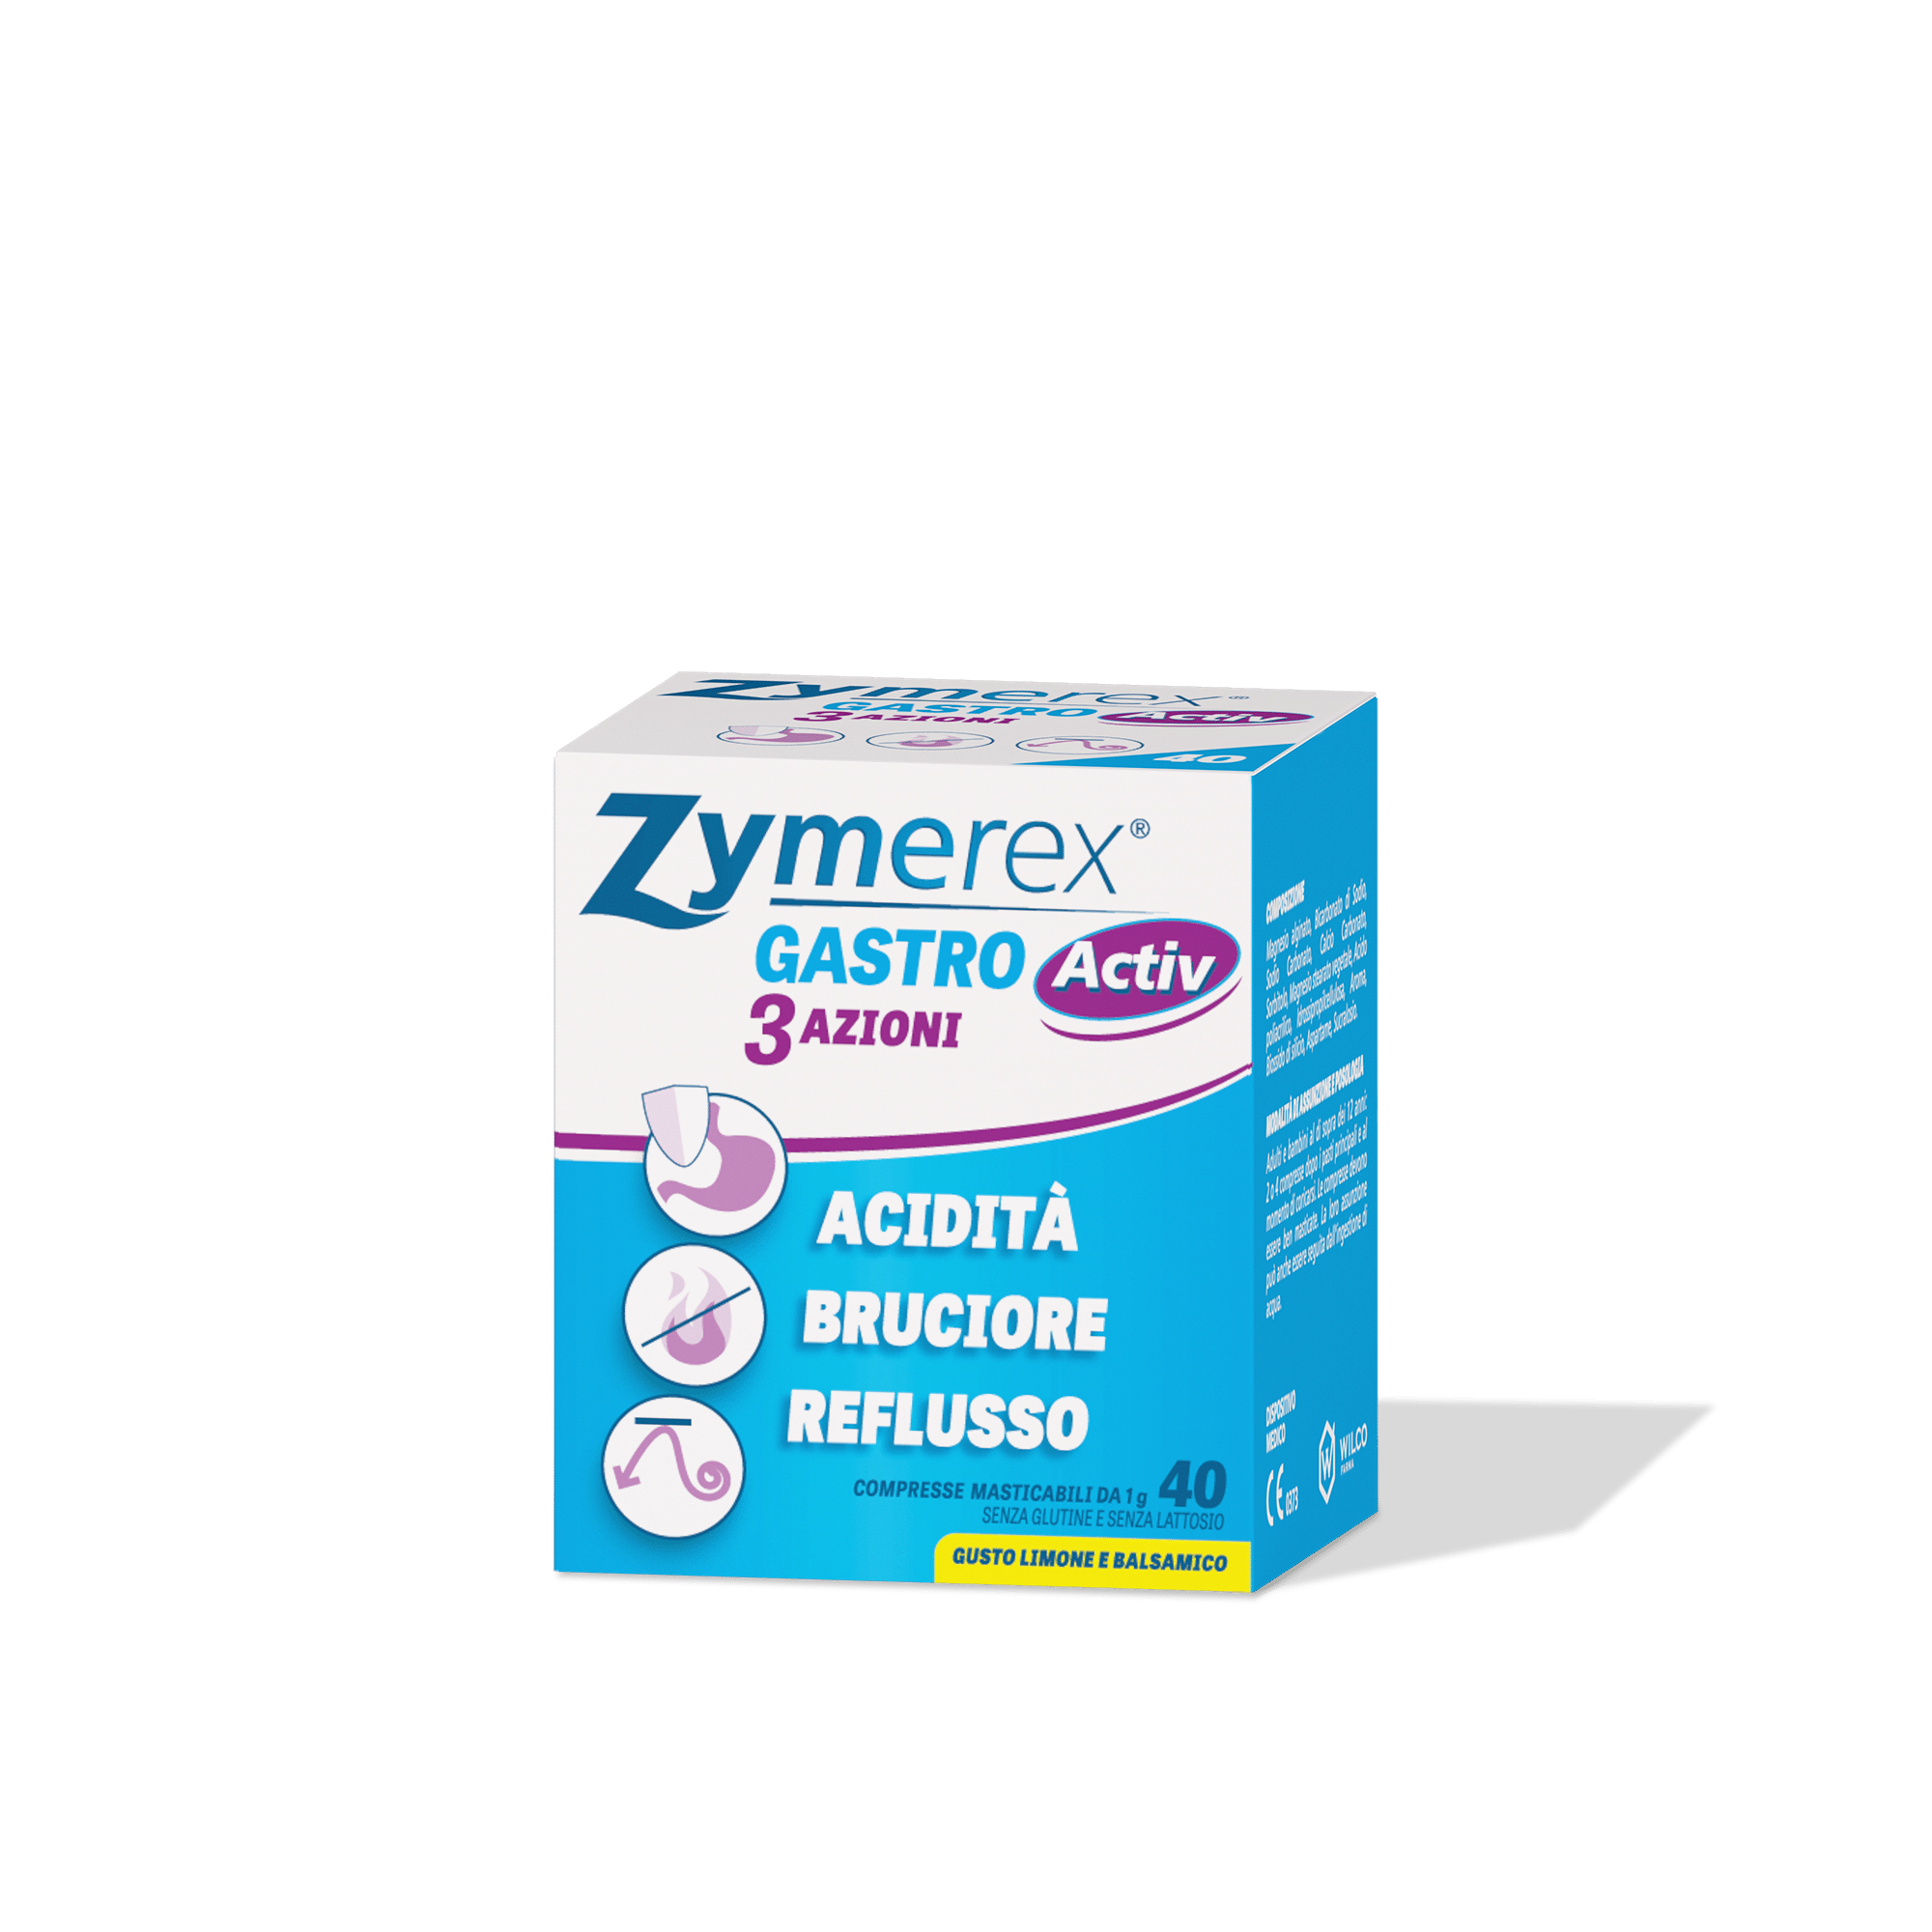 zymerex gastro active confezione